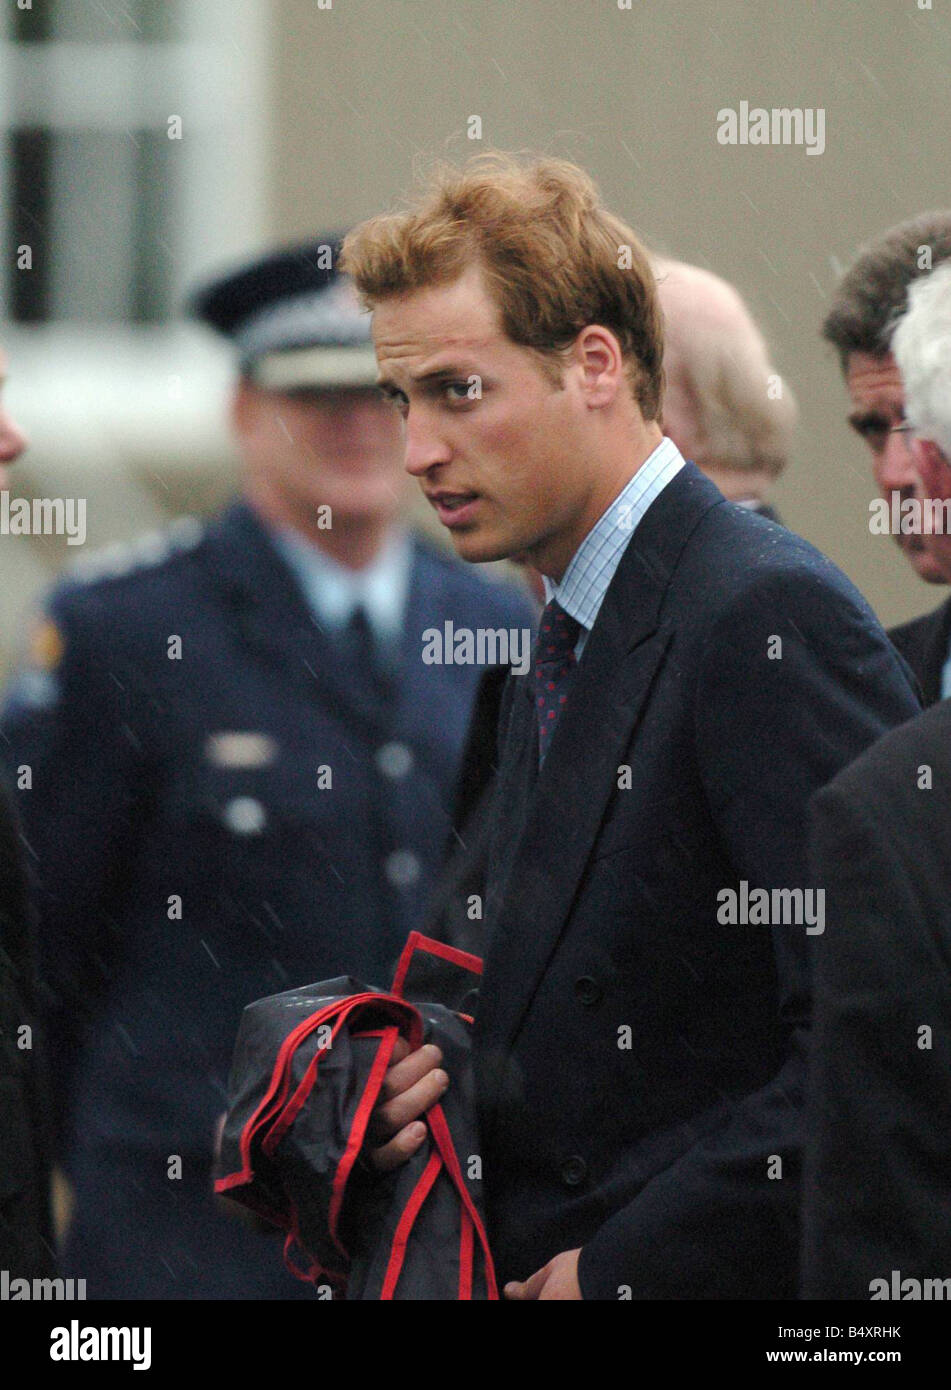 Un molto cupa principe William attende a bordo del suo aereo privato sotto la pioggia a Blenheim Airport bound per Auckland Nuova Zelanda William sembra avere una cicatrice sul suo occhio sinistro Luglio 2005 Foto Stock